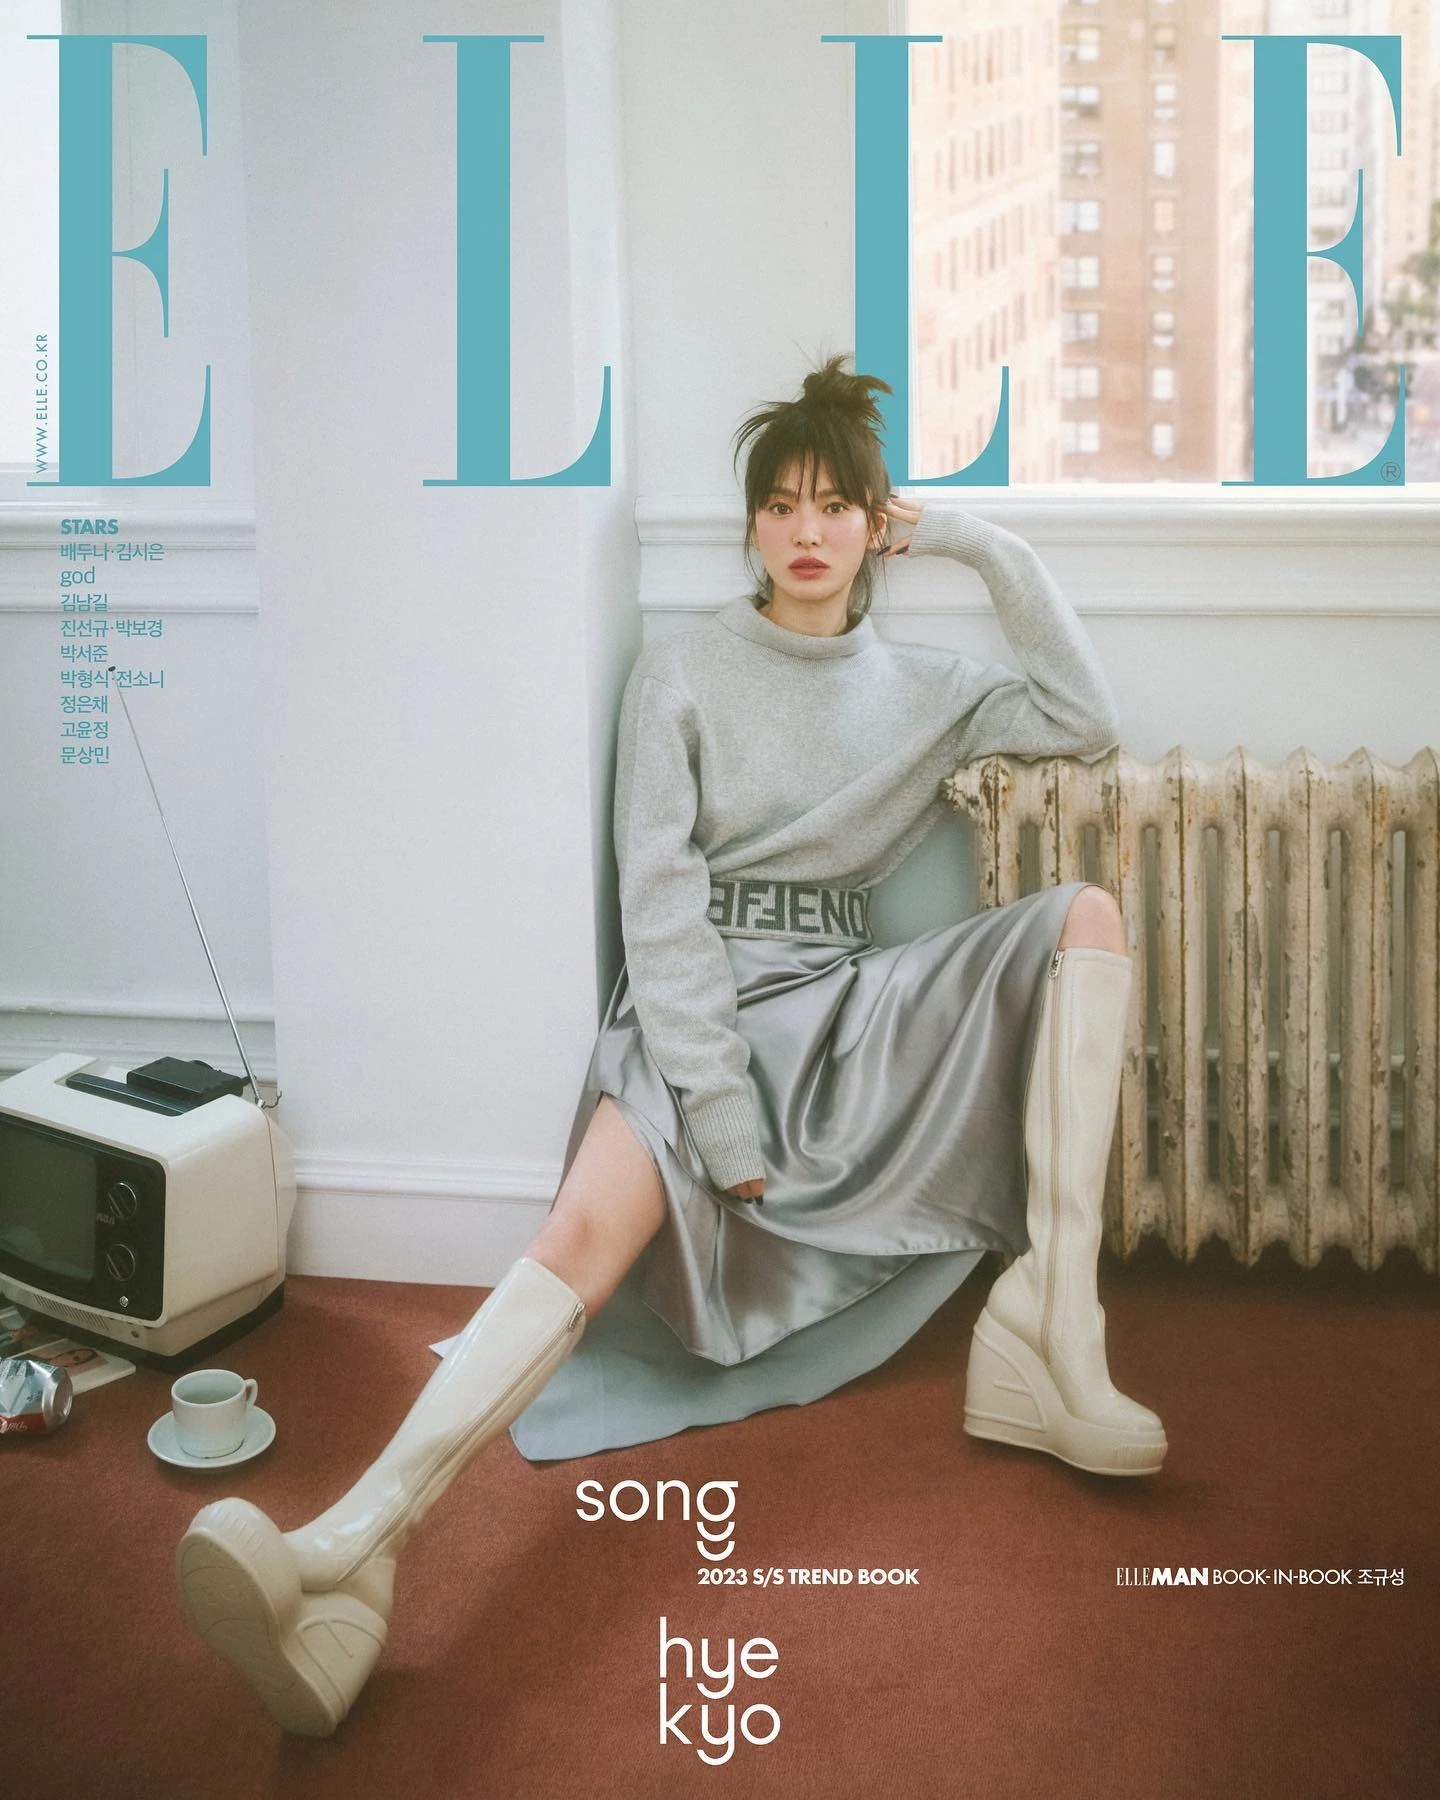 Song Hye Kyo dội bom loạt ảnh tạp chí mới đáp lại ồn ào lão hoá: Nhan sắc xứng tầm định nghĩa cho cụm sốc visual! - Ảnh 4.